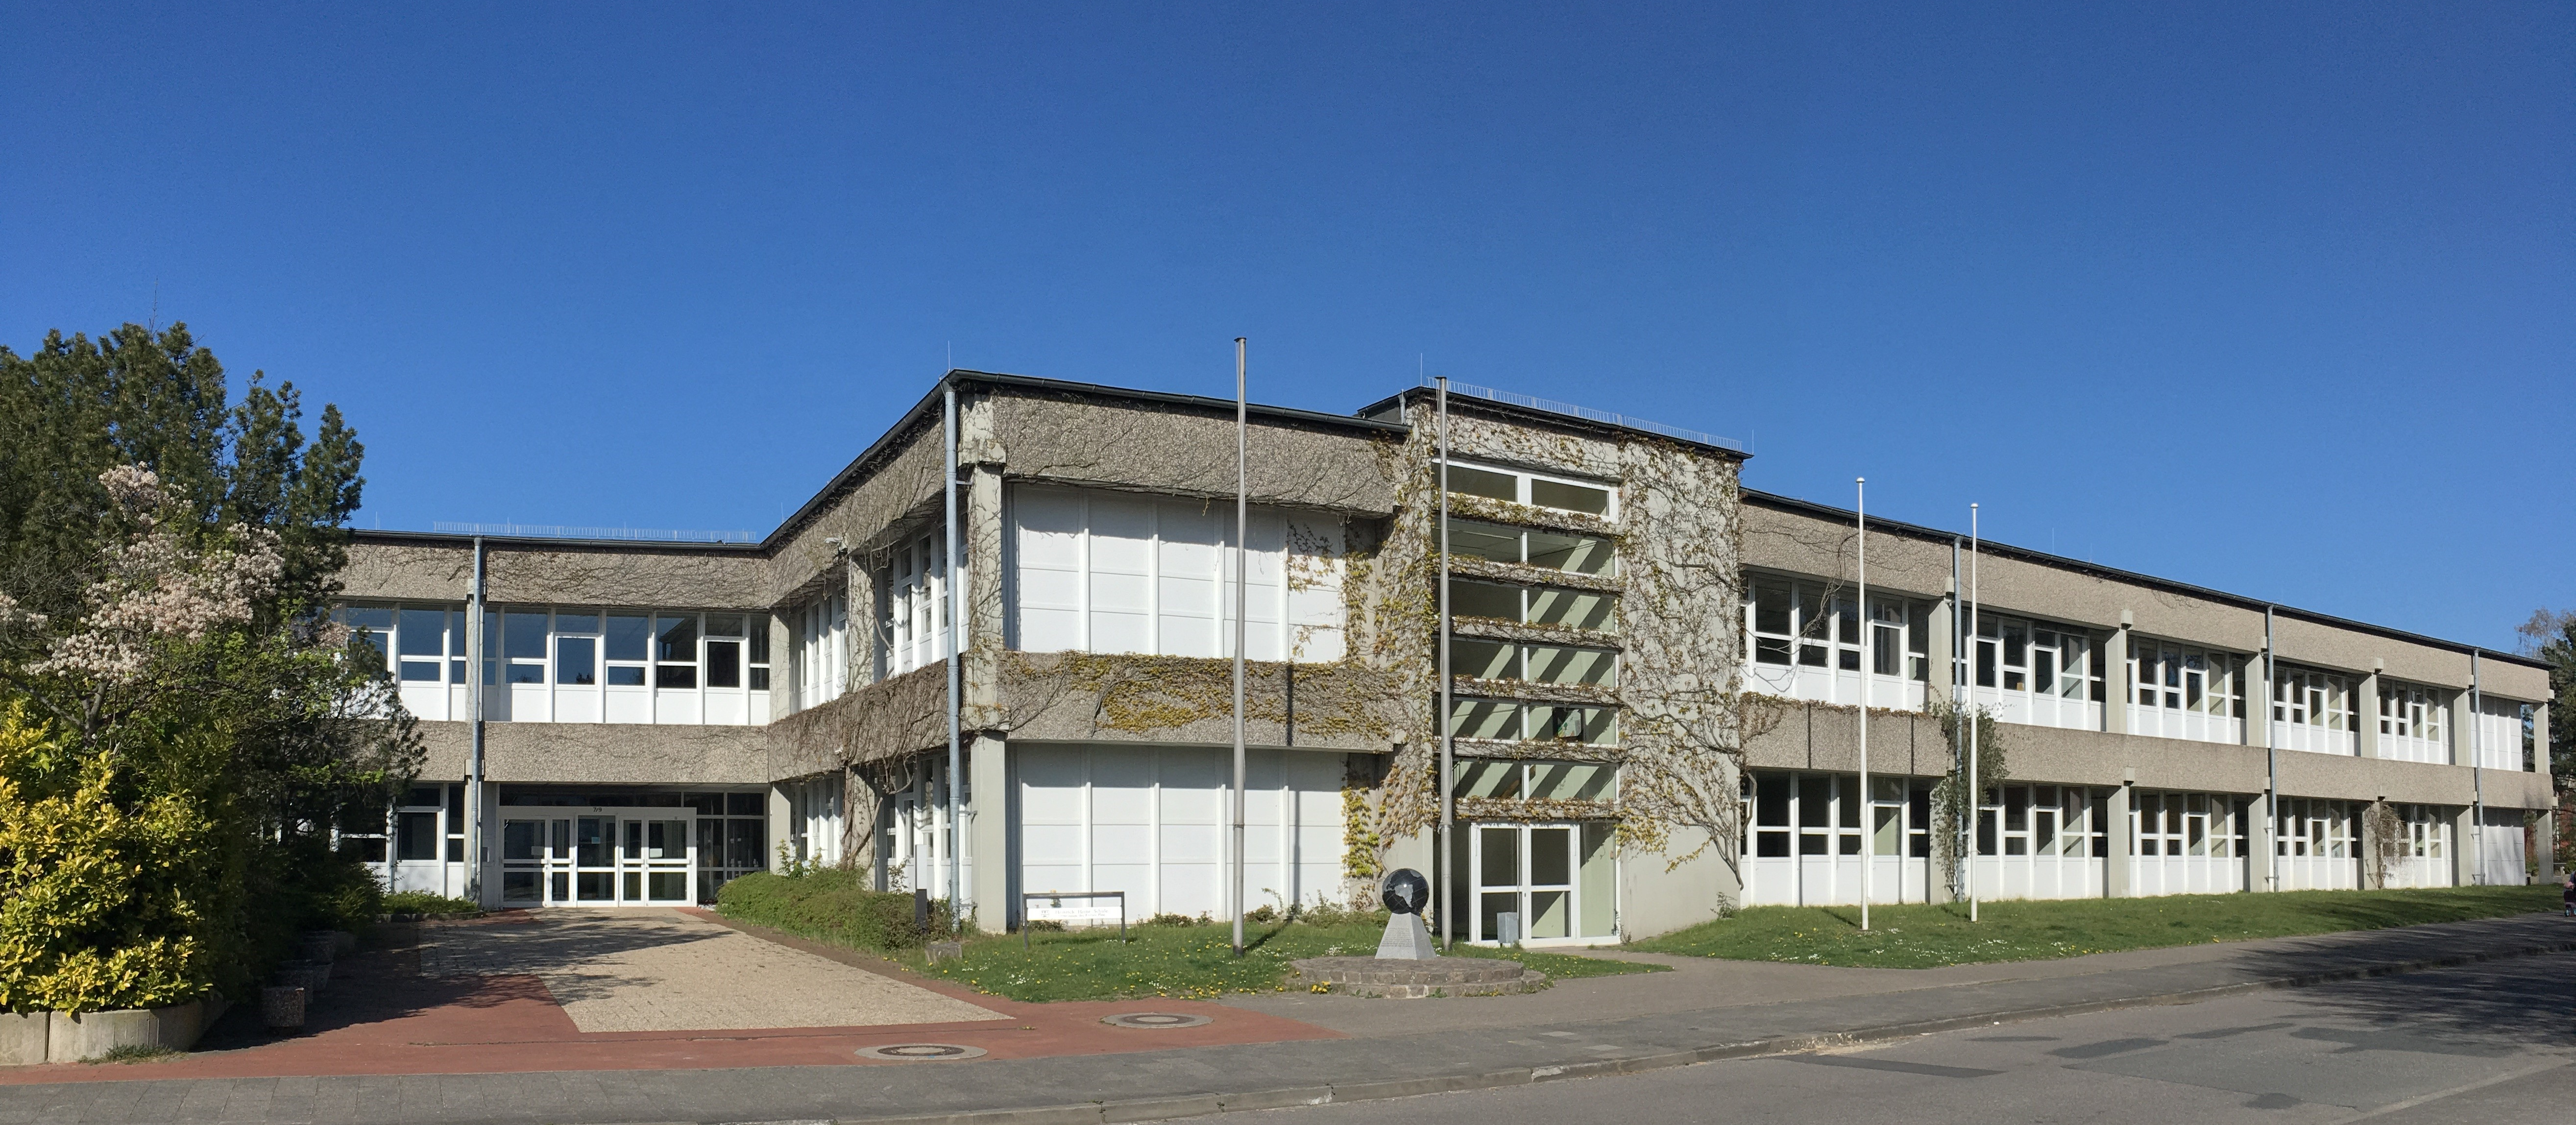 Heinrich Heine School, Heikendorf, Germany